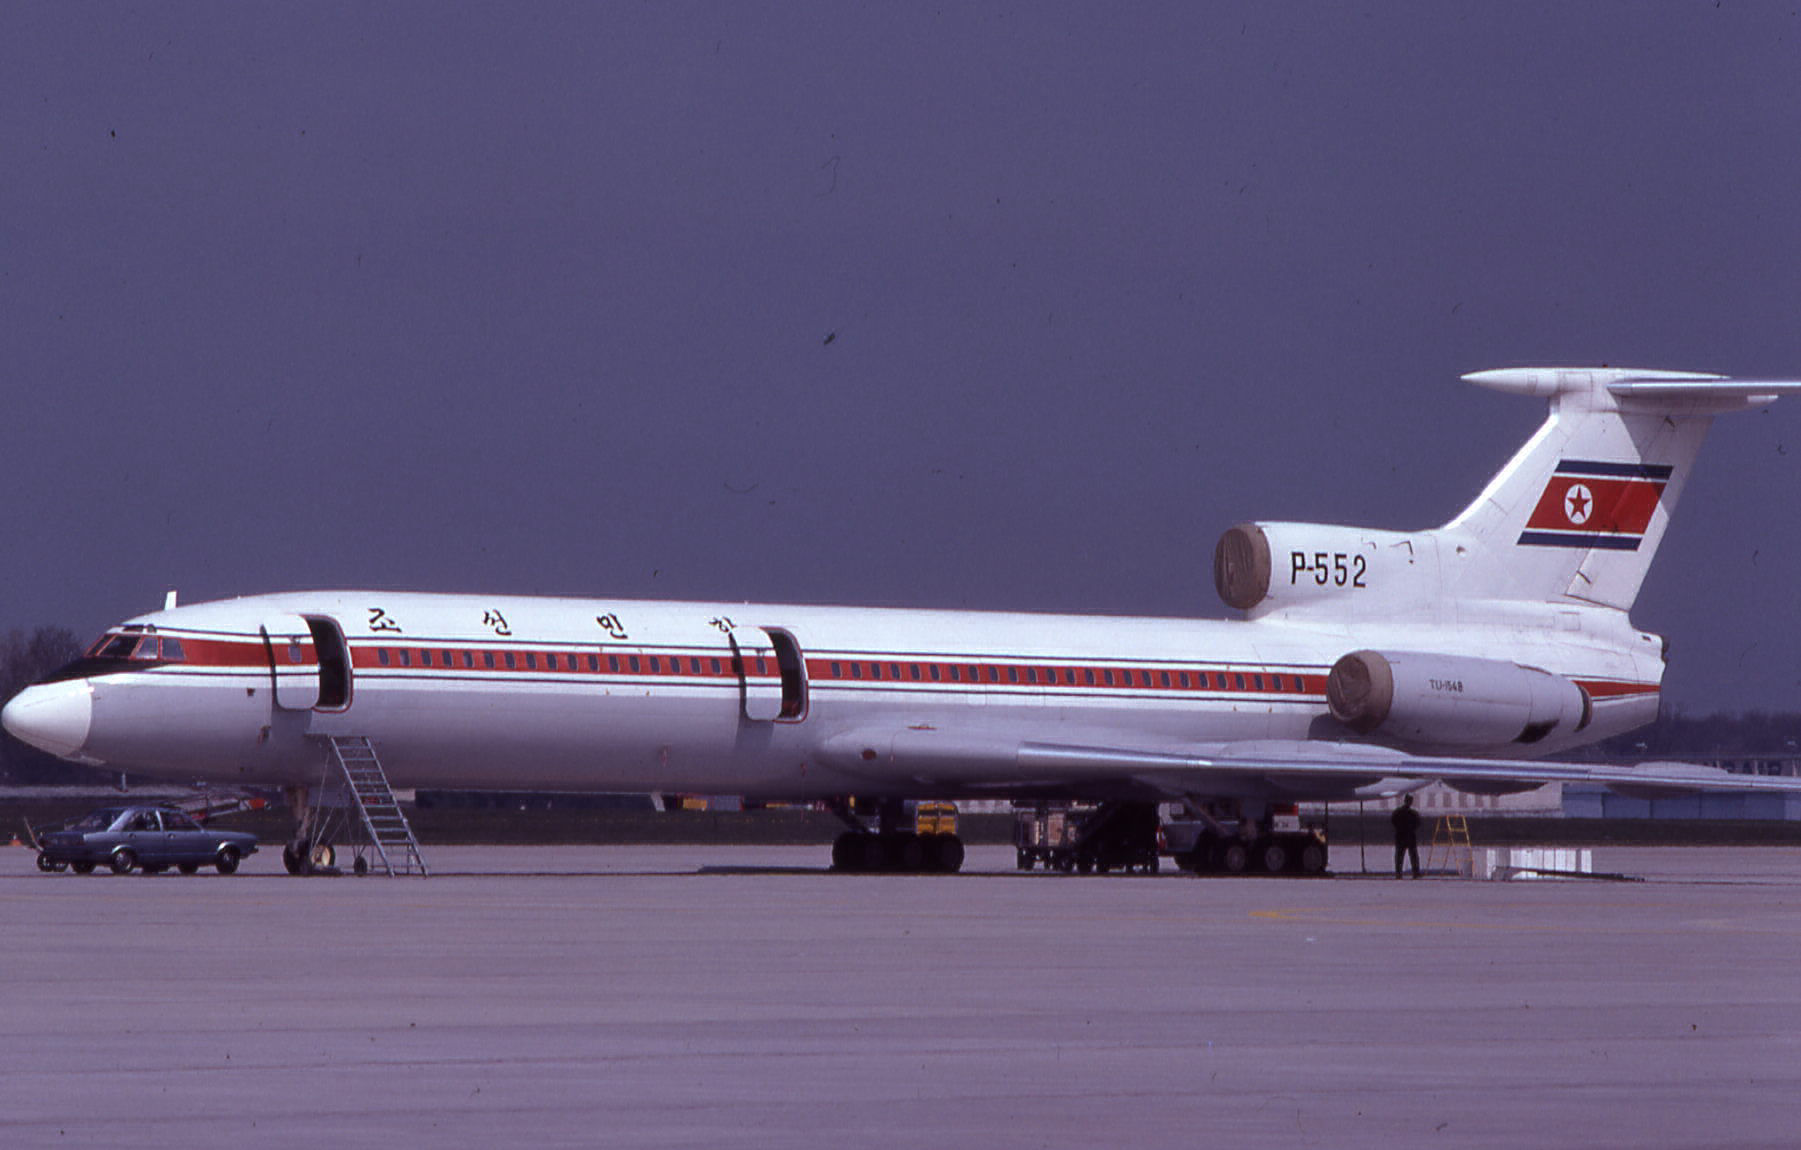 P-552 Tupolev Tu-154B CAAK